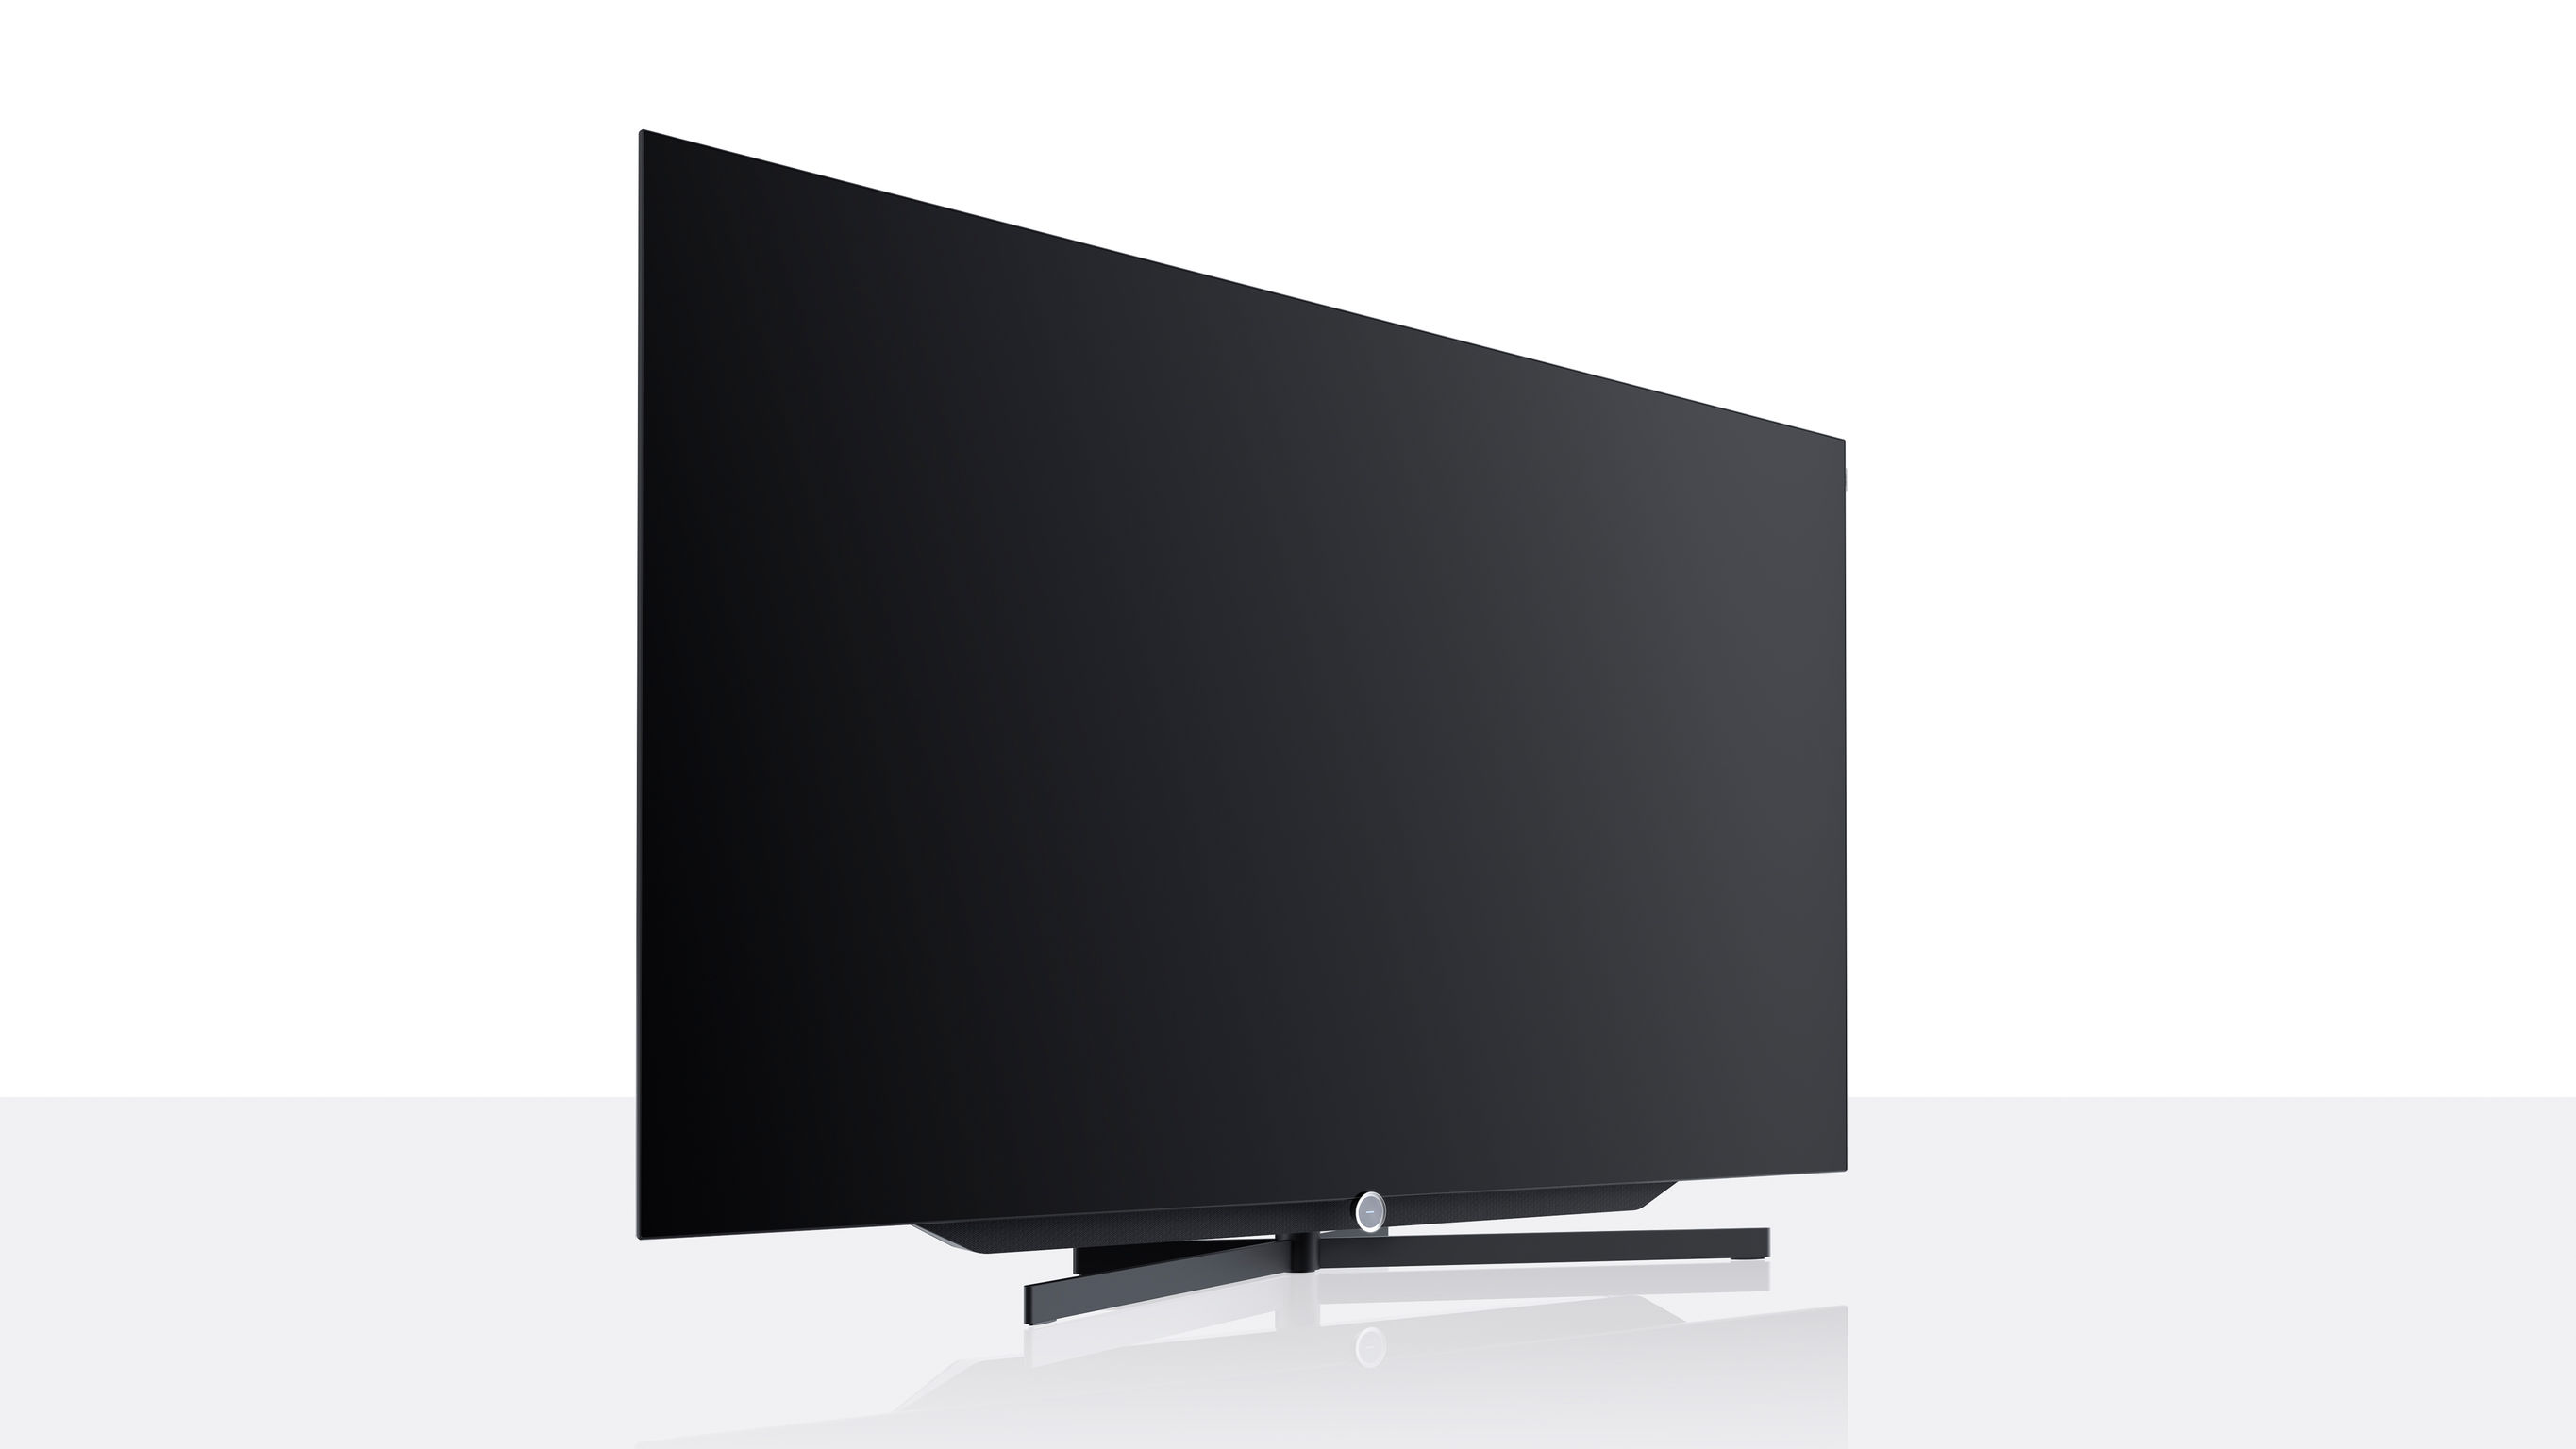 Probamos el Loewe Bild: un televisor sofisticado con un diseño cuidado y de  alta calidad